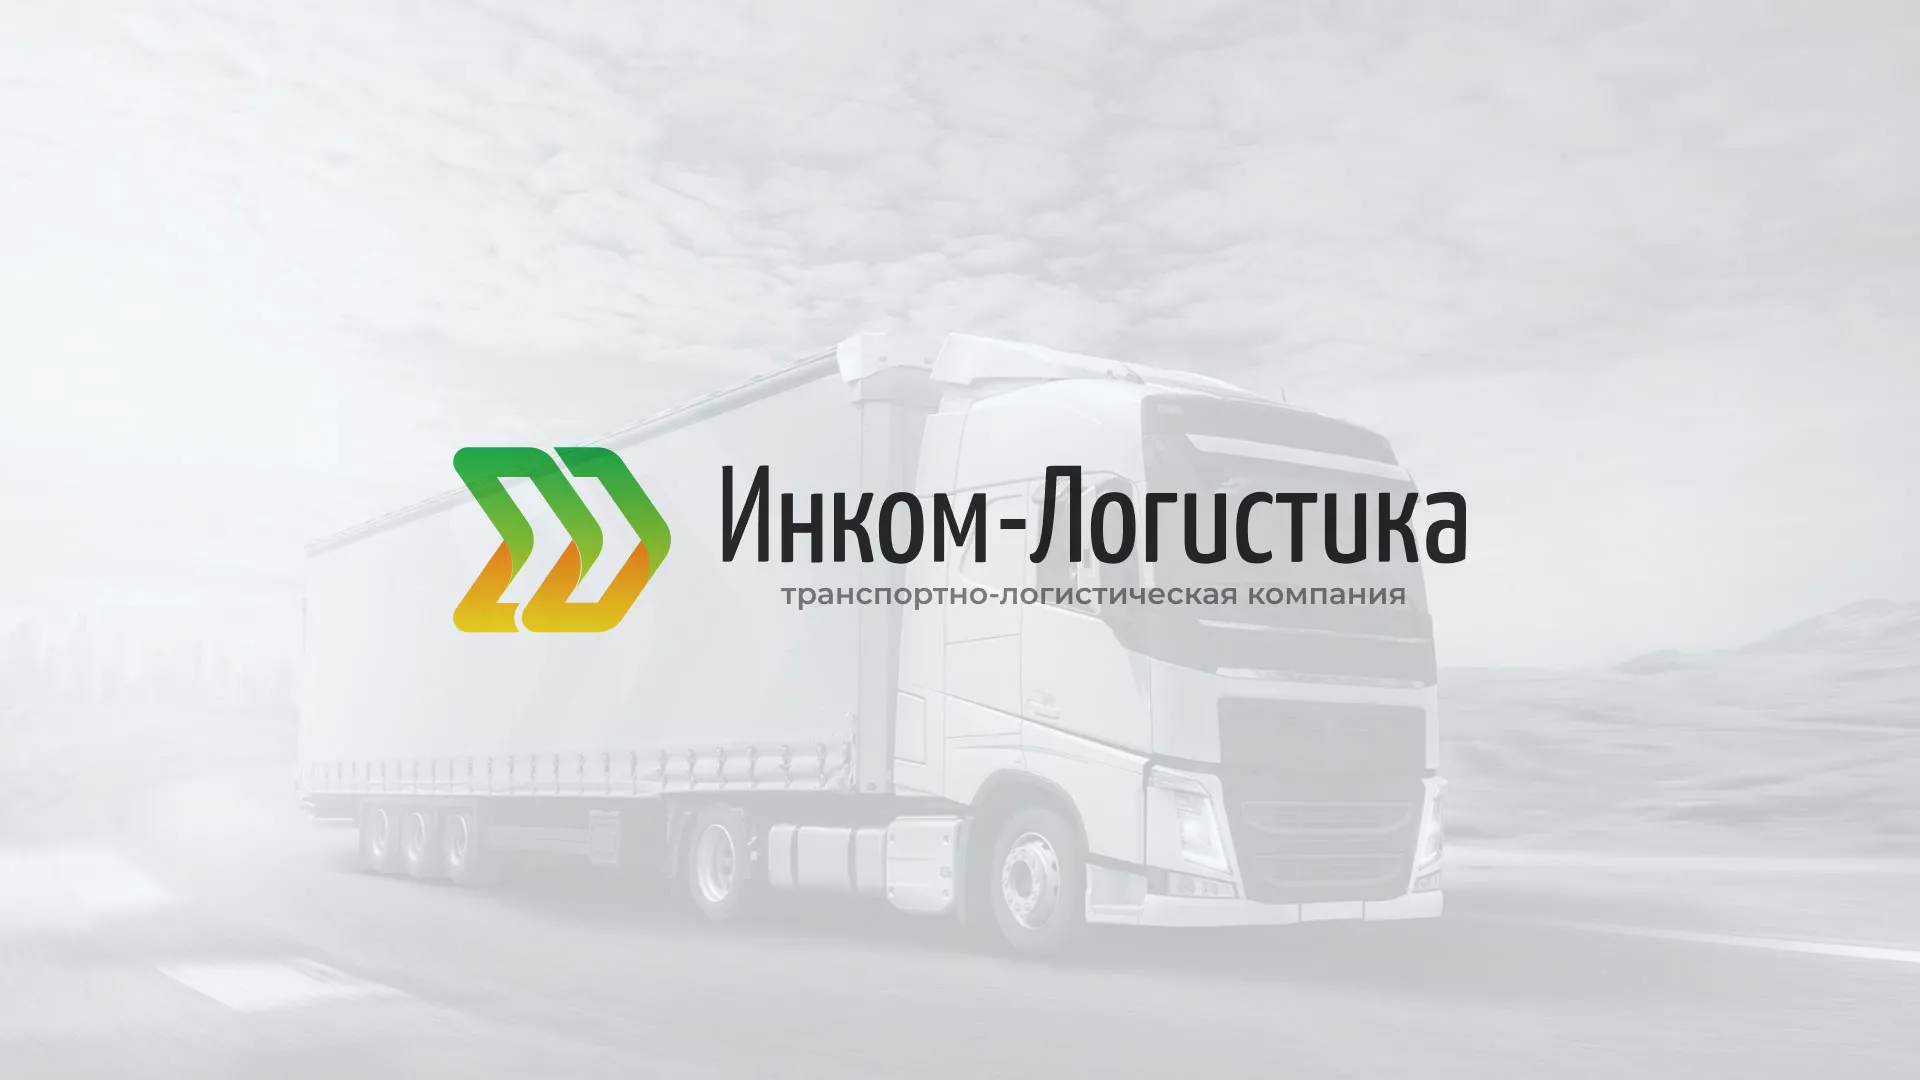 Разработка логотипа и сайта компании «Инком-Логистика» в Гремячинске